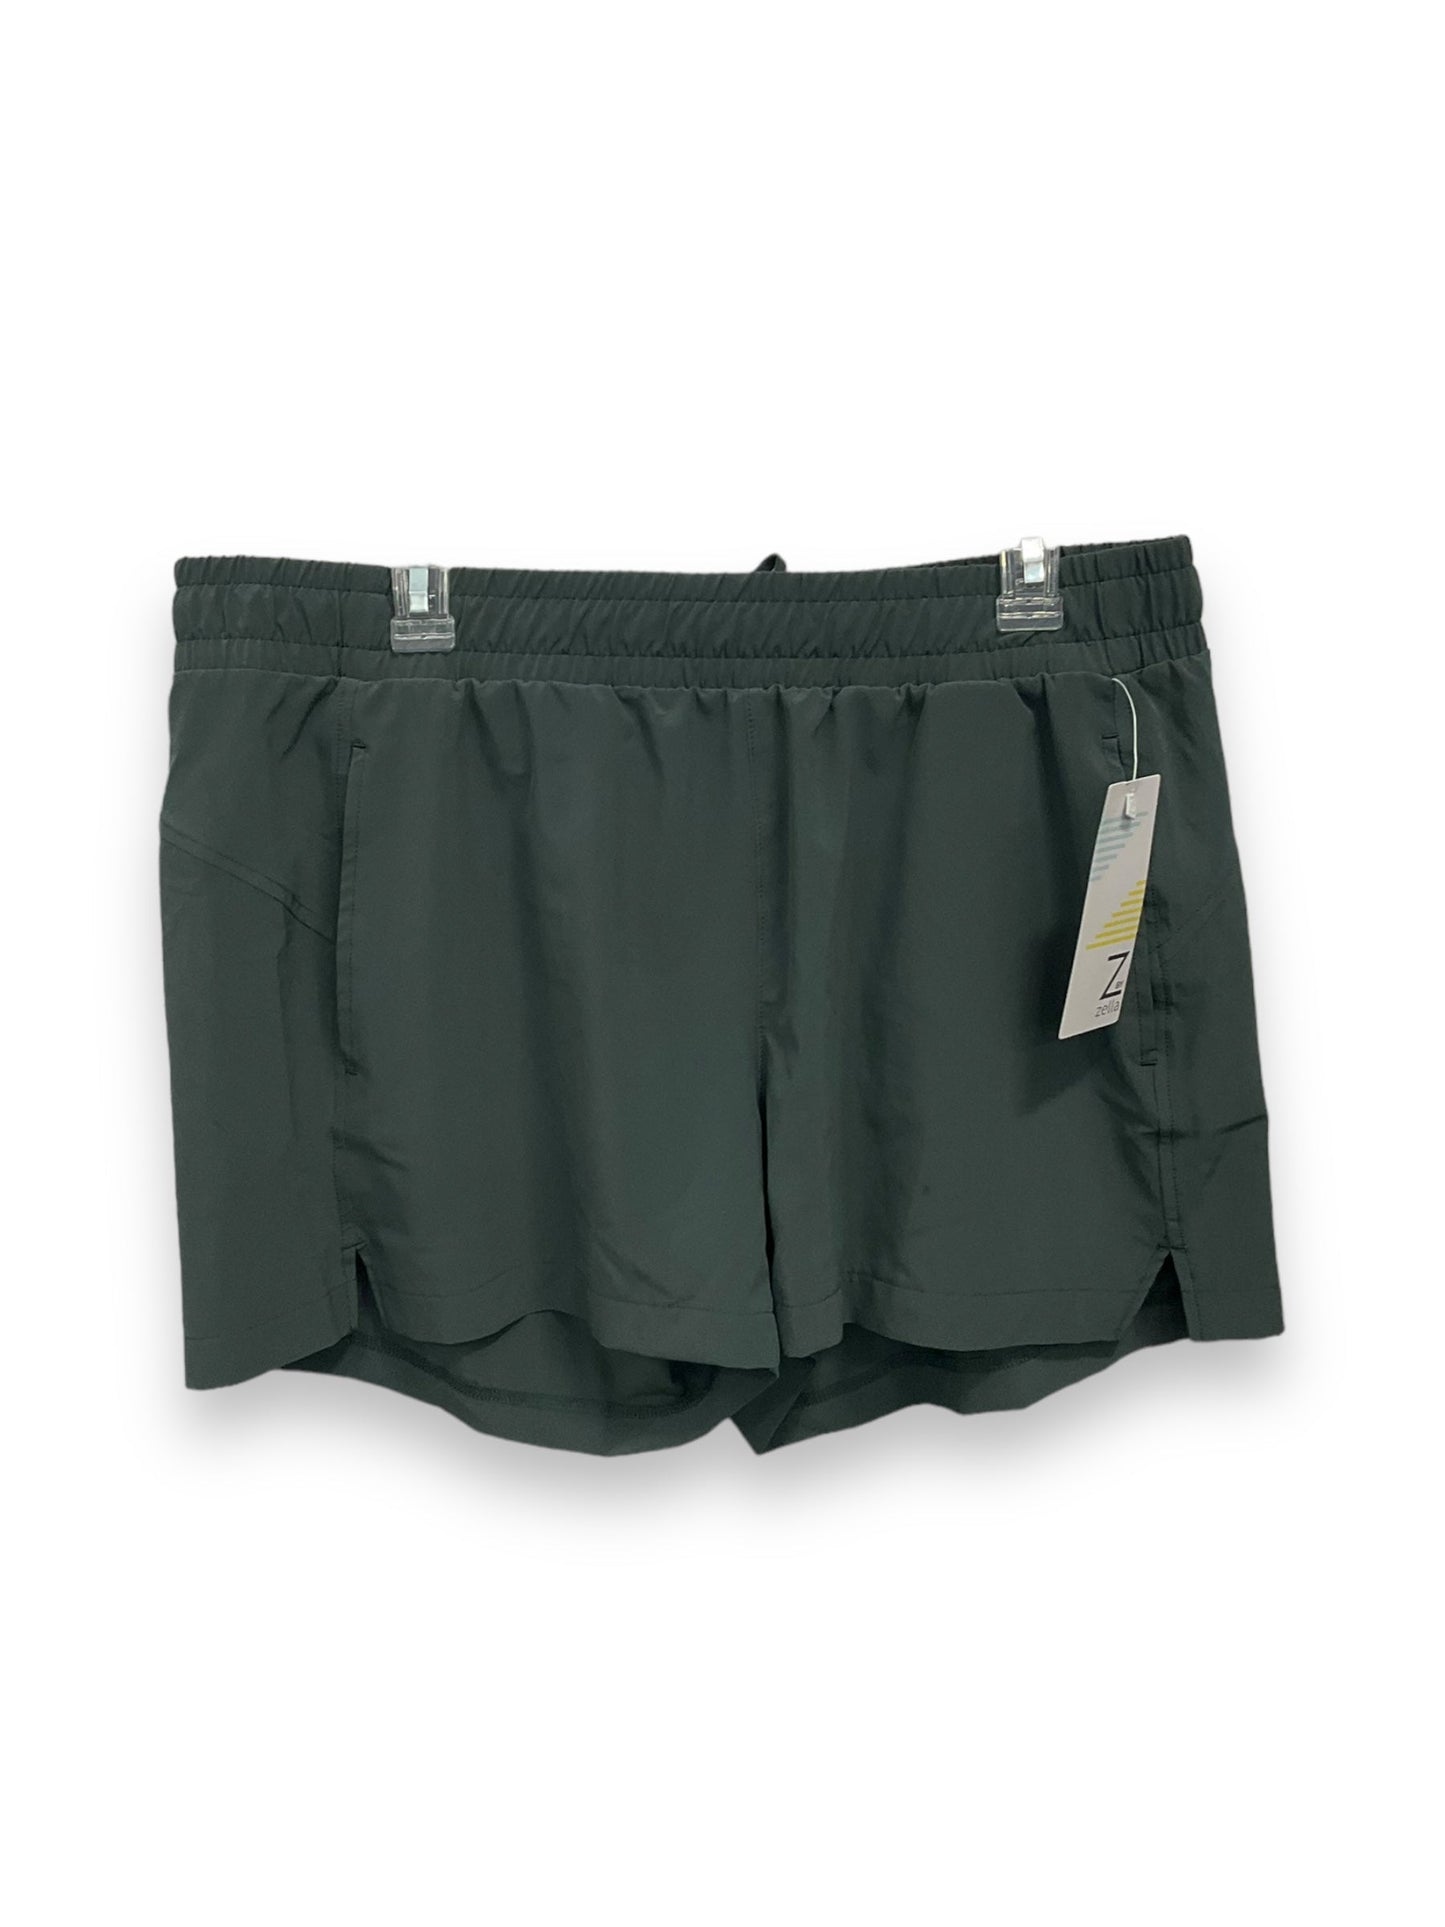 Green Athletic Shorts Zella, Size Xl